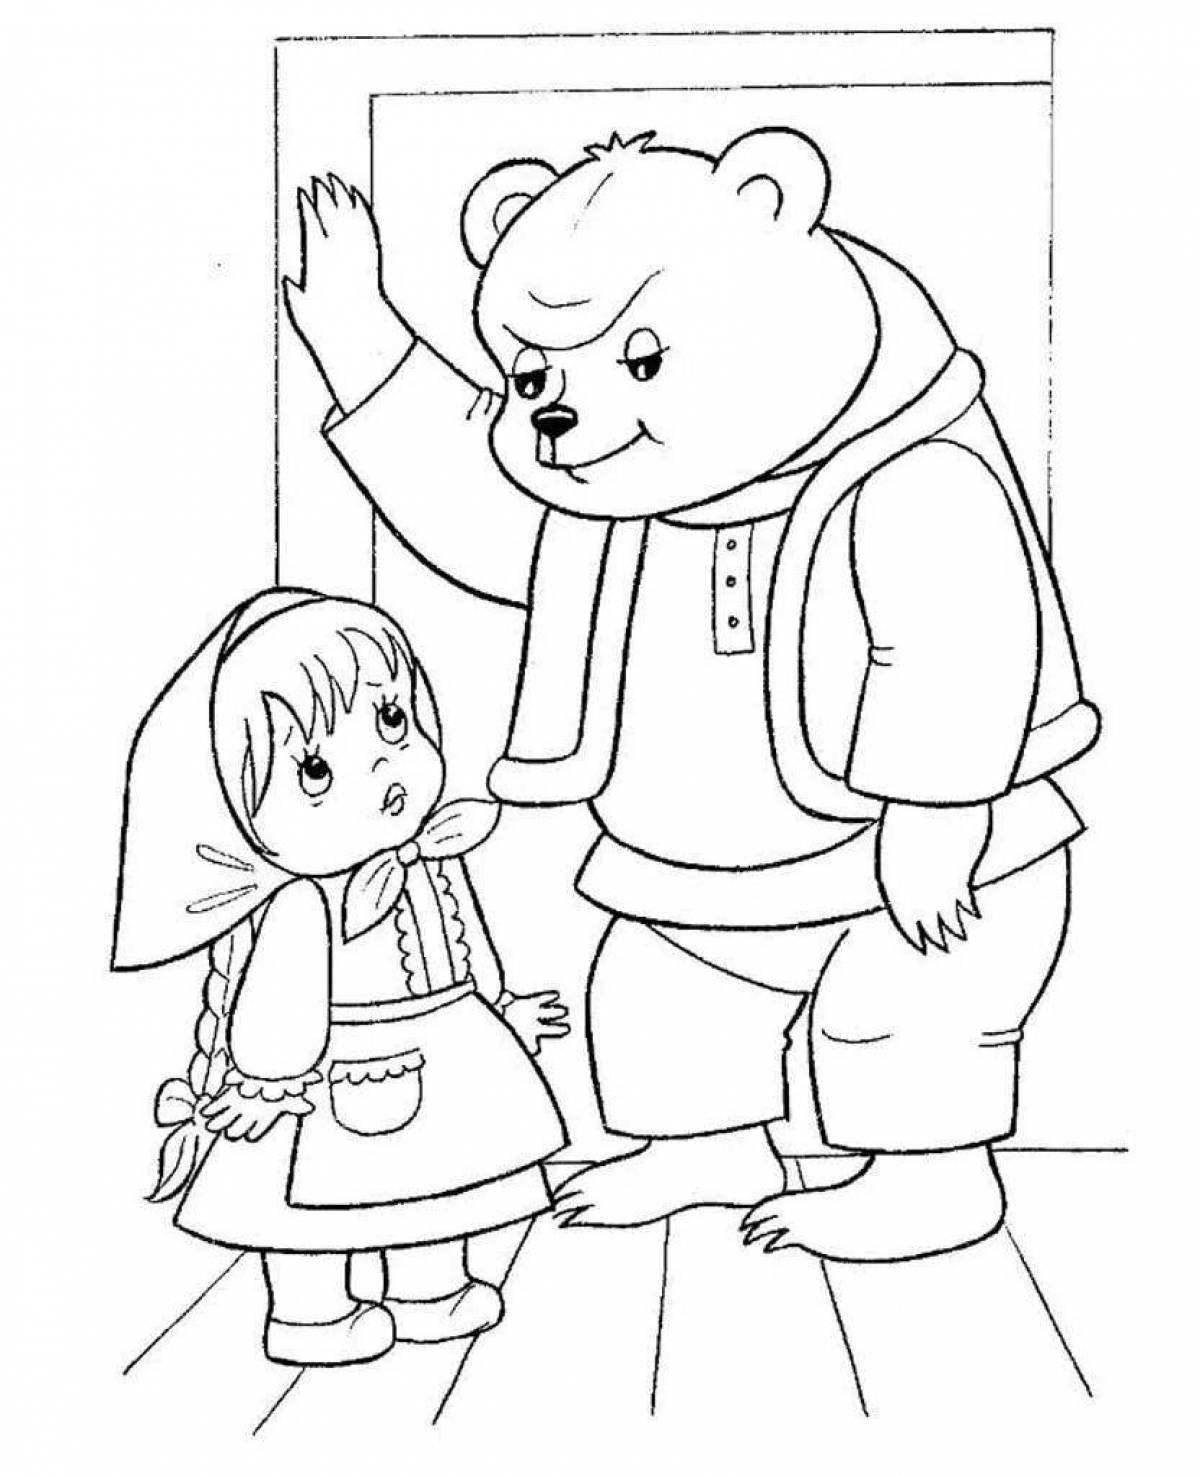 Adorable bun and teddy bear coloring book